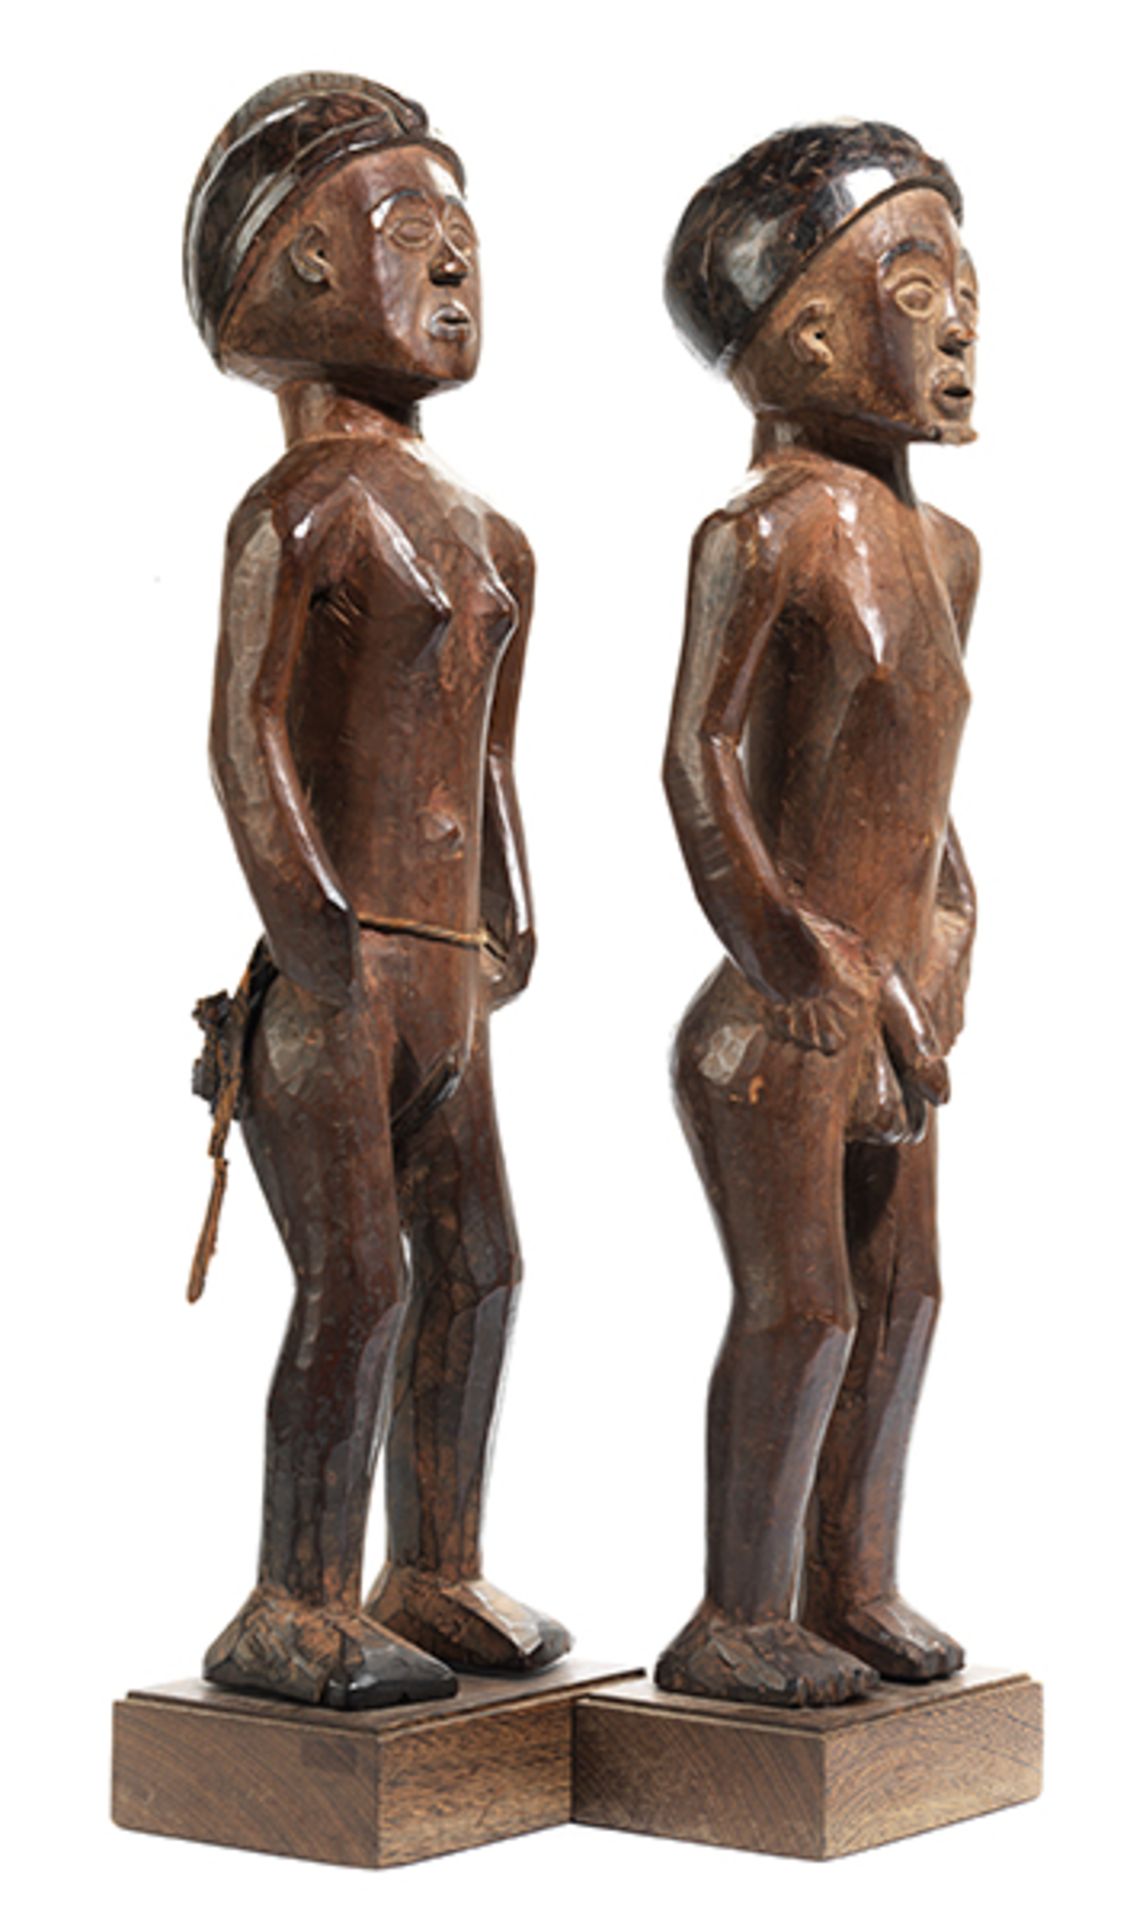 Chokwe-Figurenpaar Höhe ohne Sockel: 57 cm und 58 cm. Gesamthöhe: 62 cm und 63 cm. Aus Holz. Sambia/ - Bild 3 aus 5